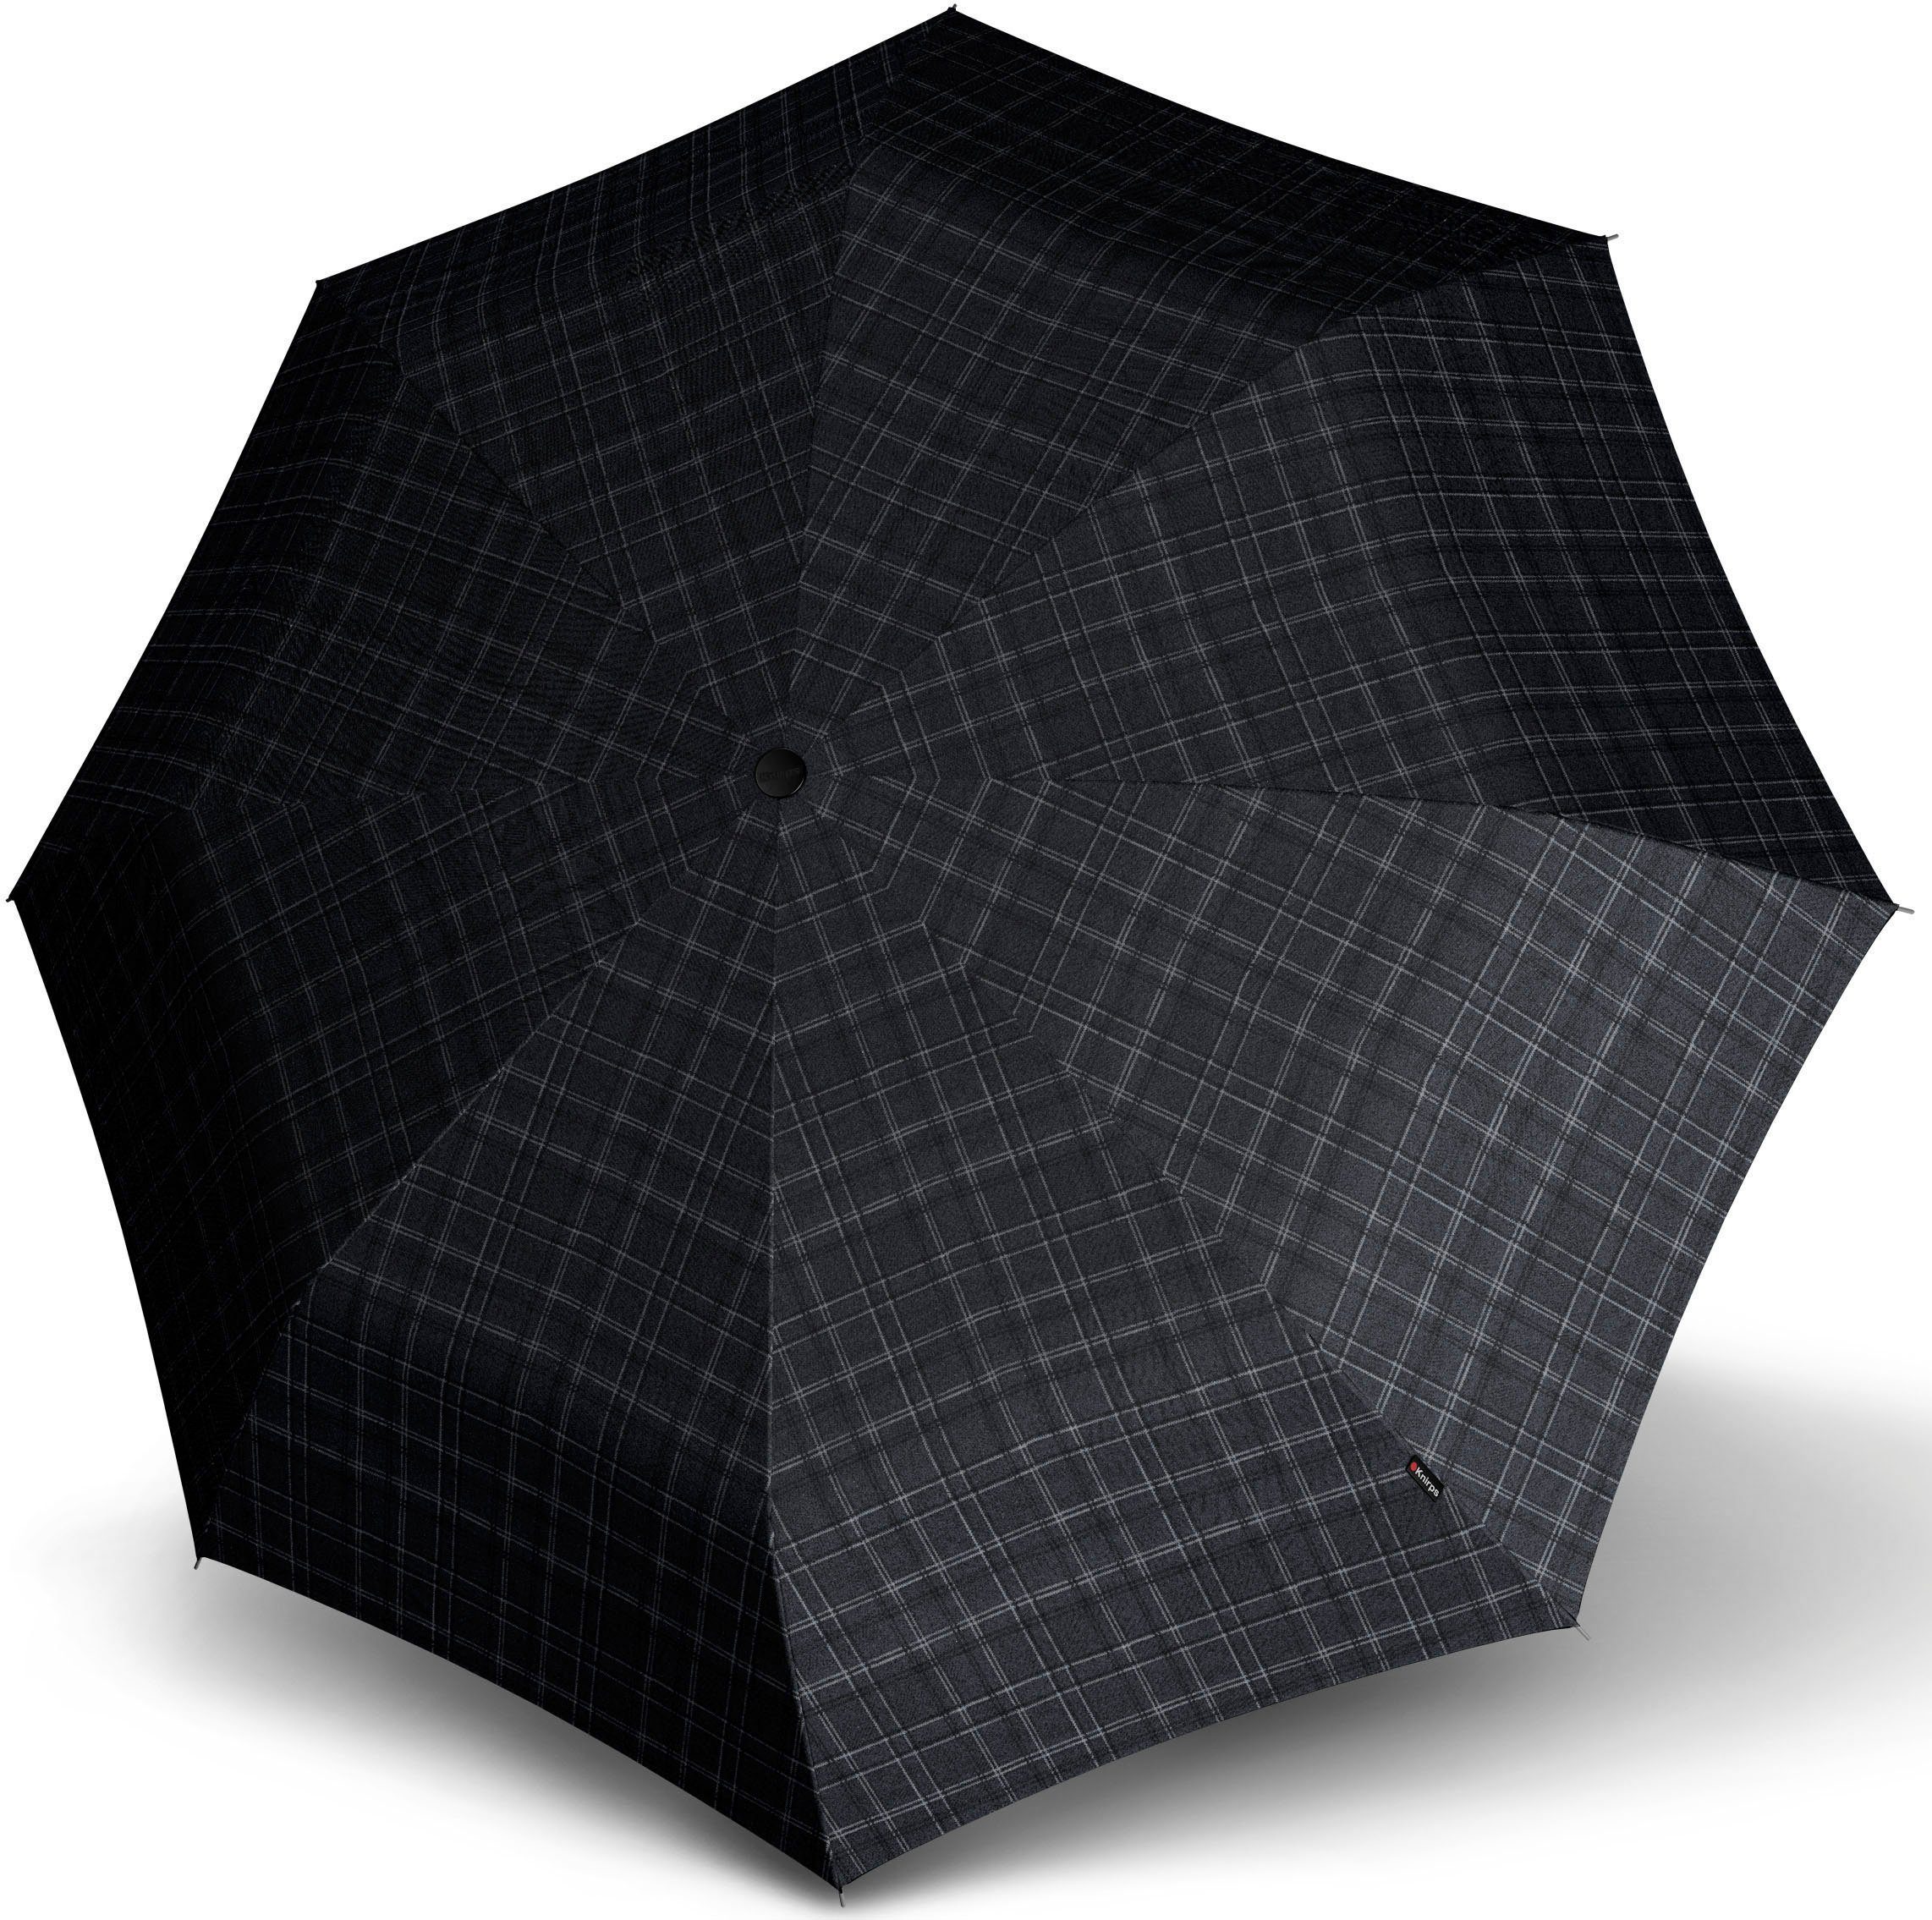 Personen Taschenregenschirm mit Prints Duomatic, Men's check, 2 großem Knirps® Extra für Check T.400 Schirmdach Large